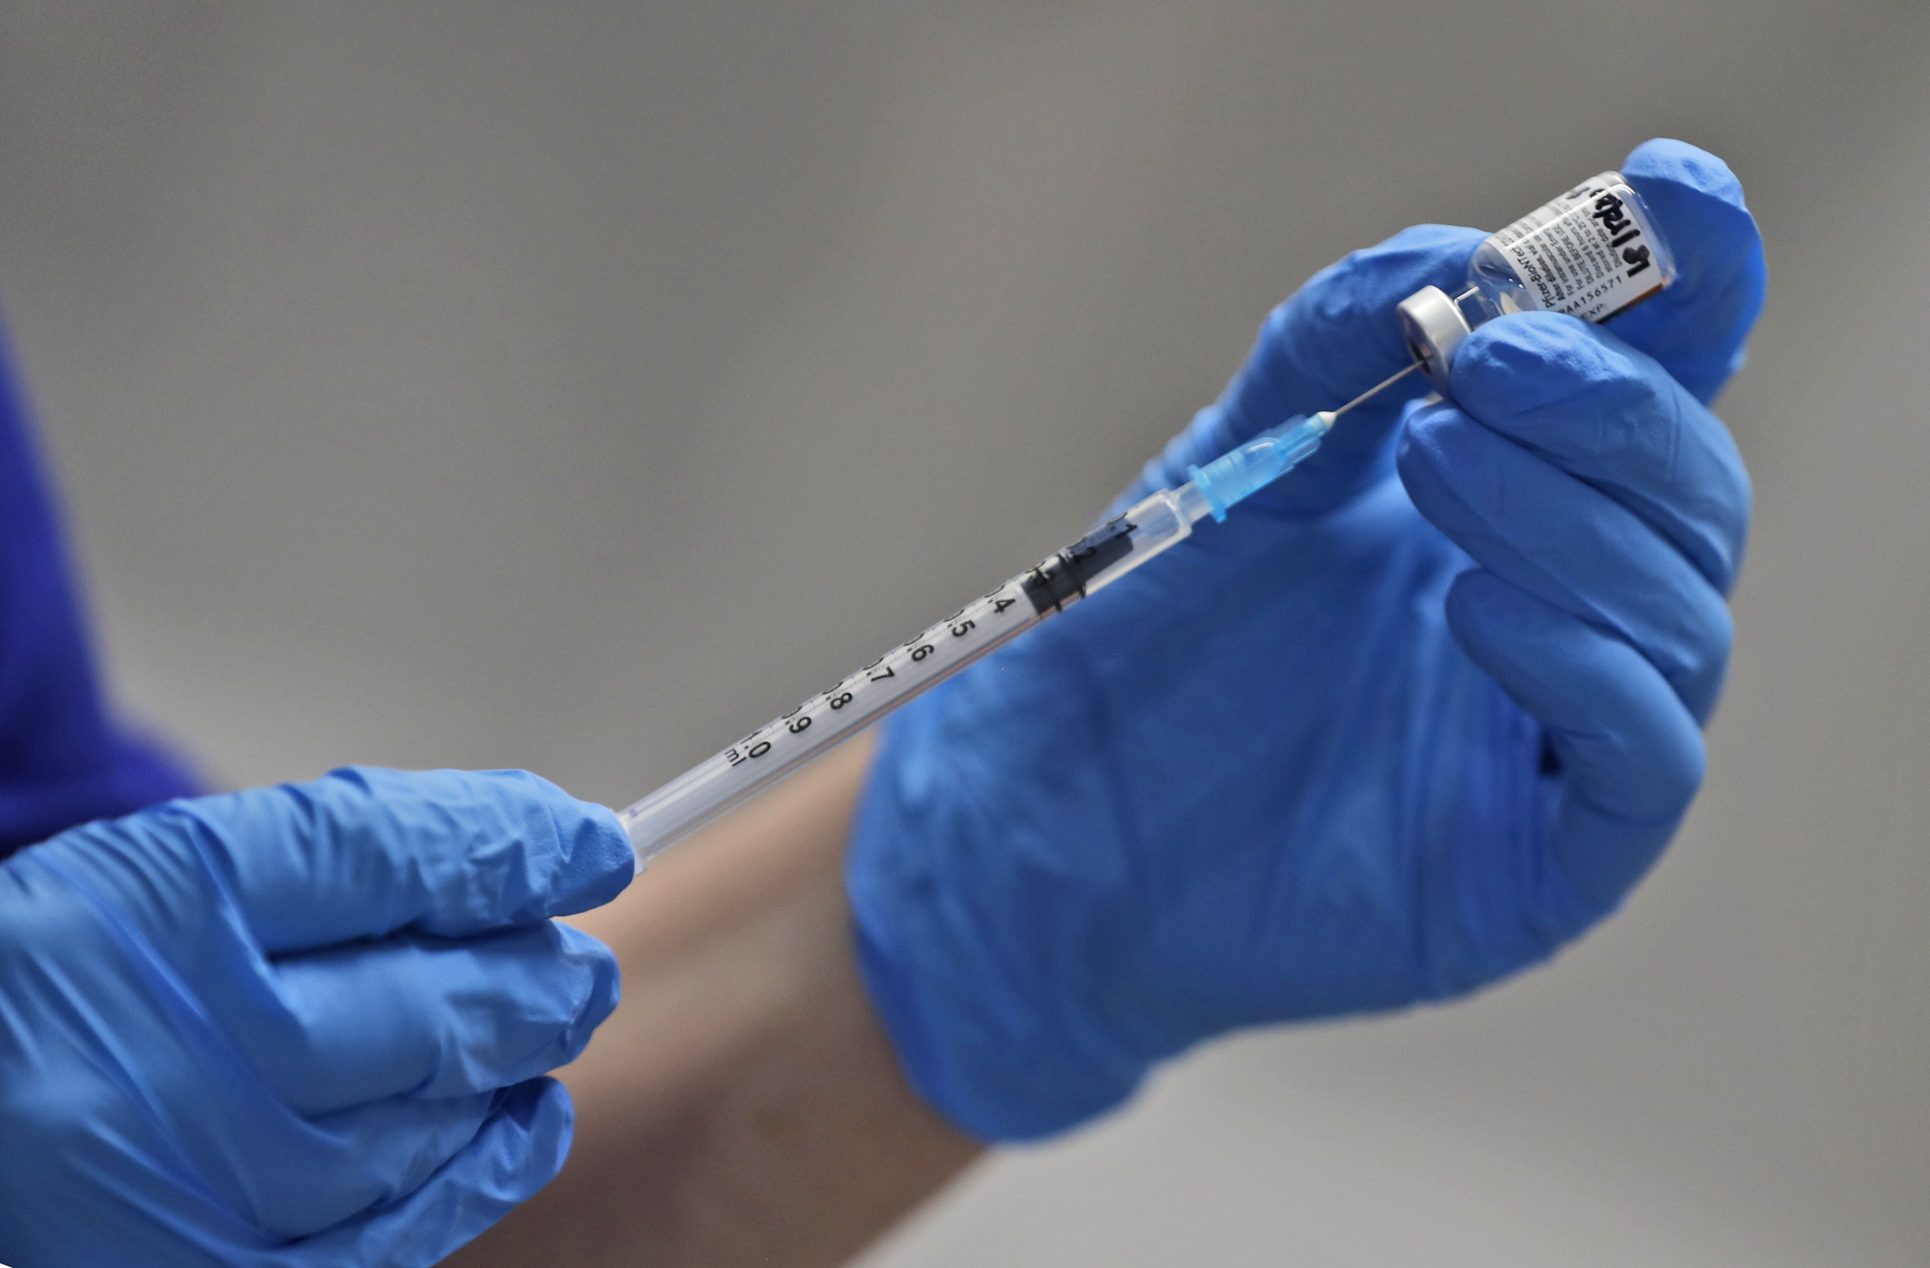 Farmacias privadas aseguran estar listas para vender vacuna contra covid